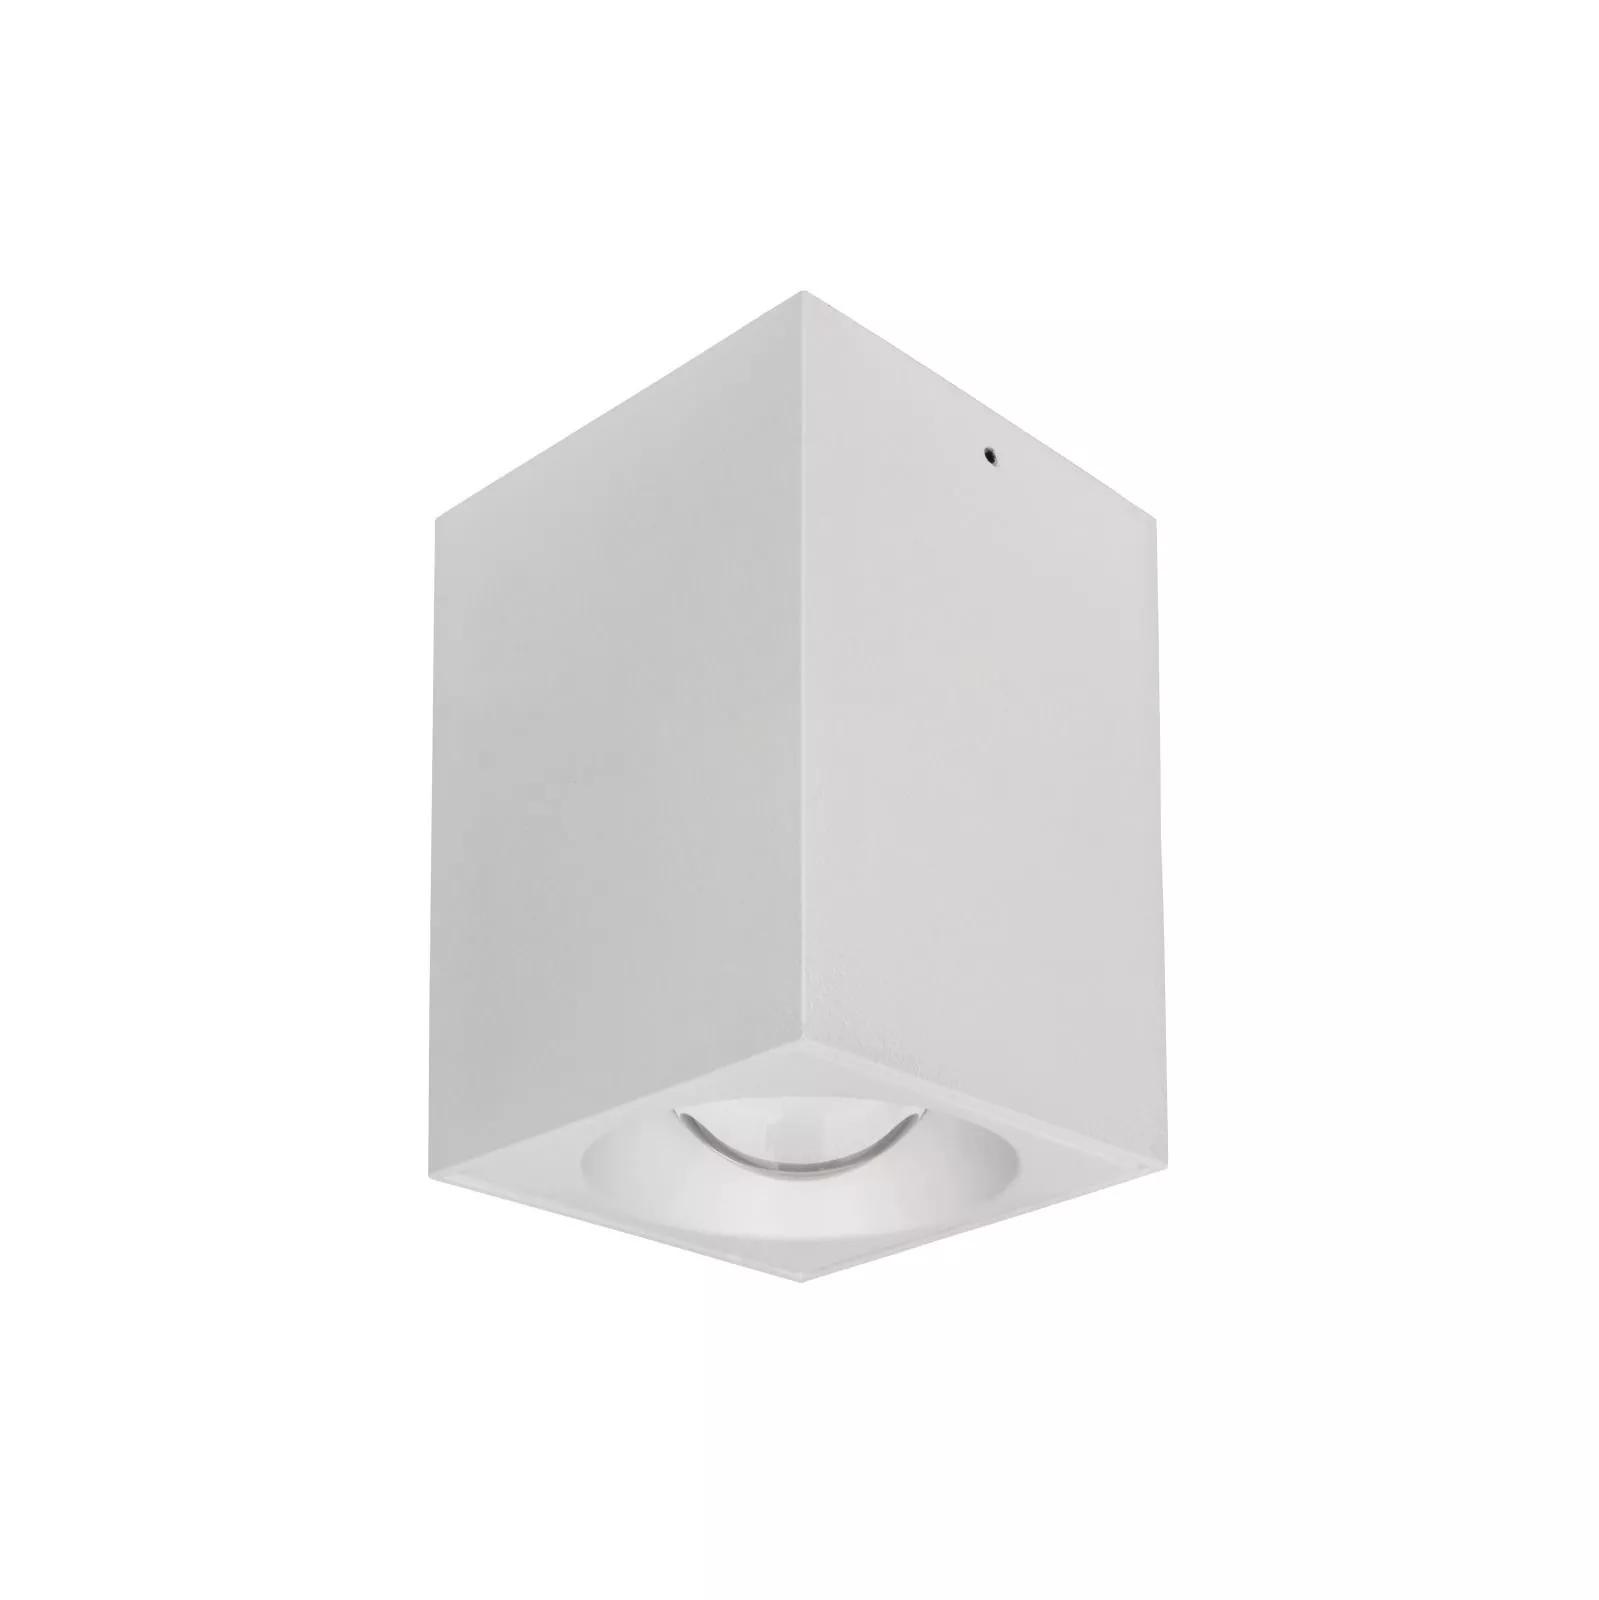 Faretto LED Quadrato a soffitto Doppio - Nero - 2x7W - Bianco